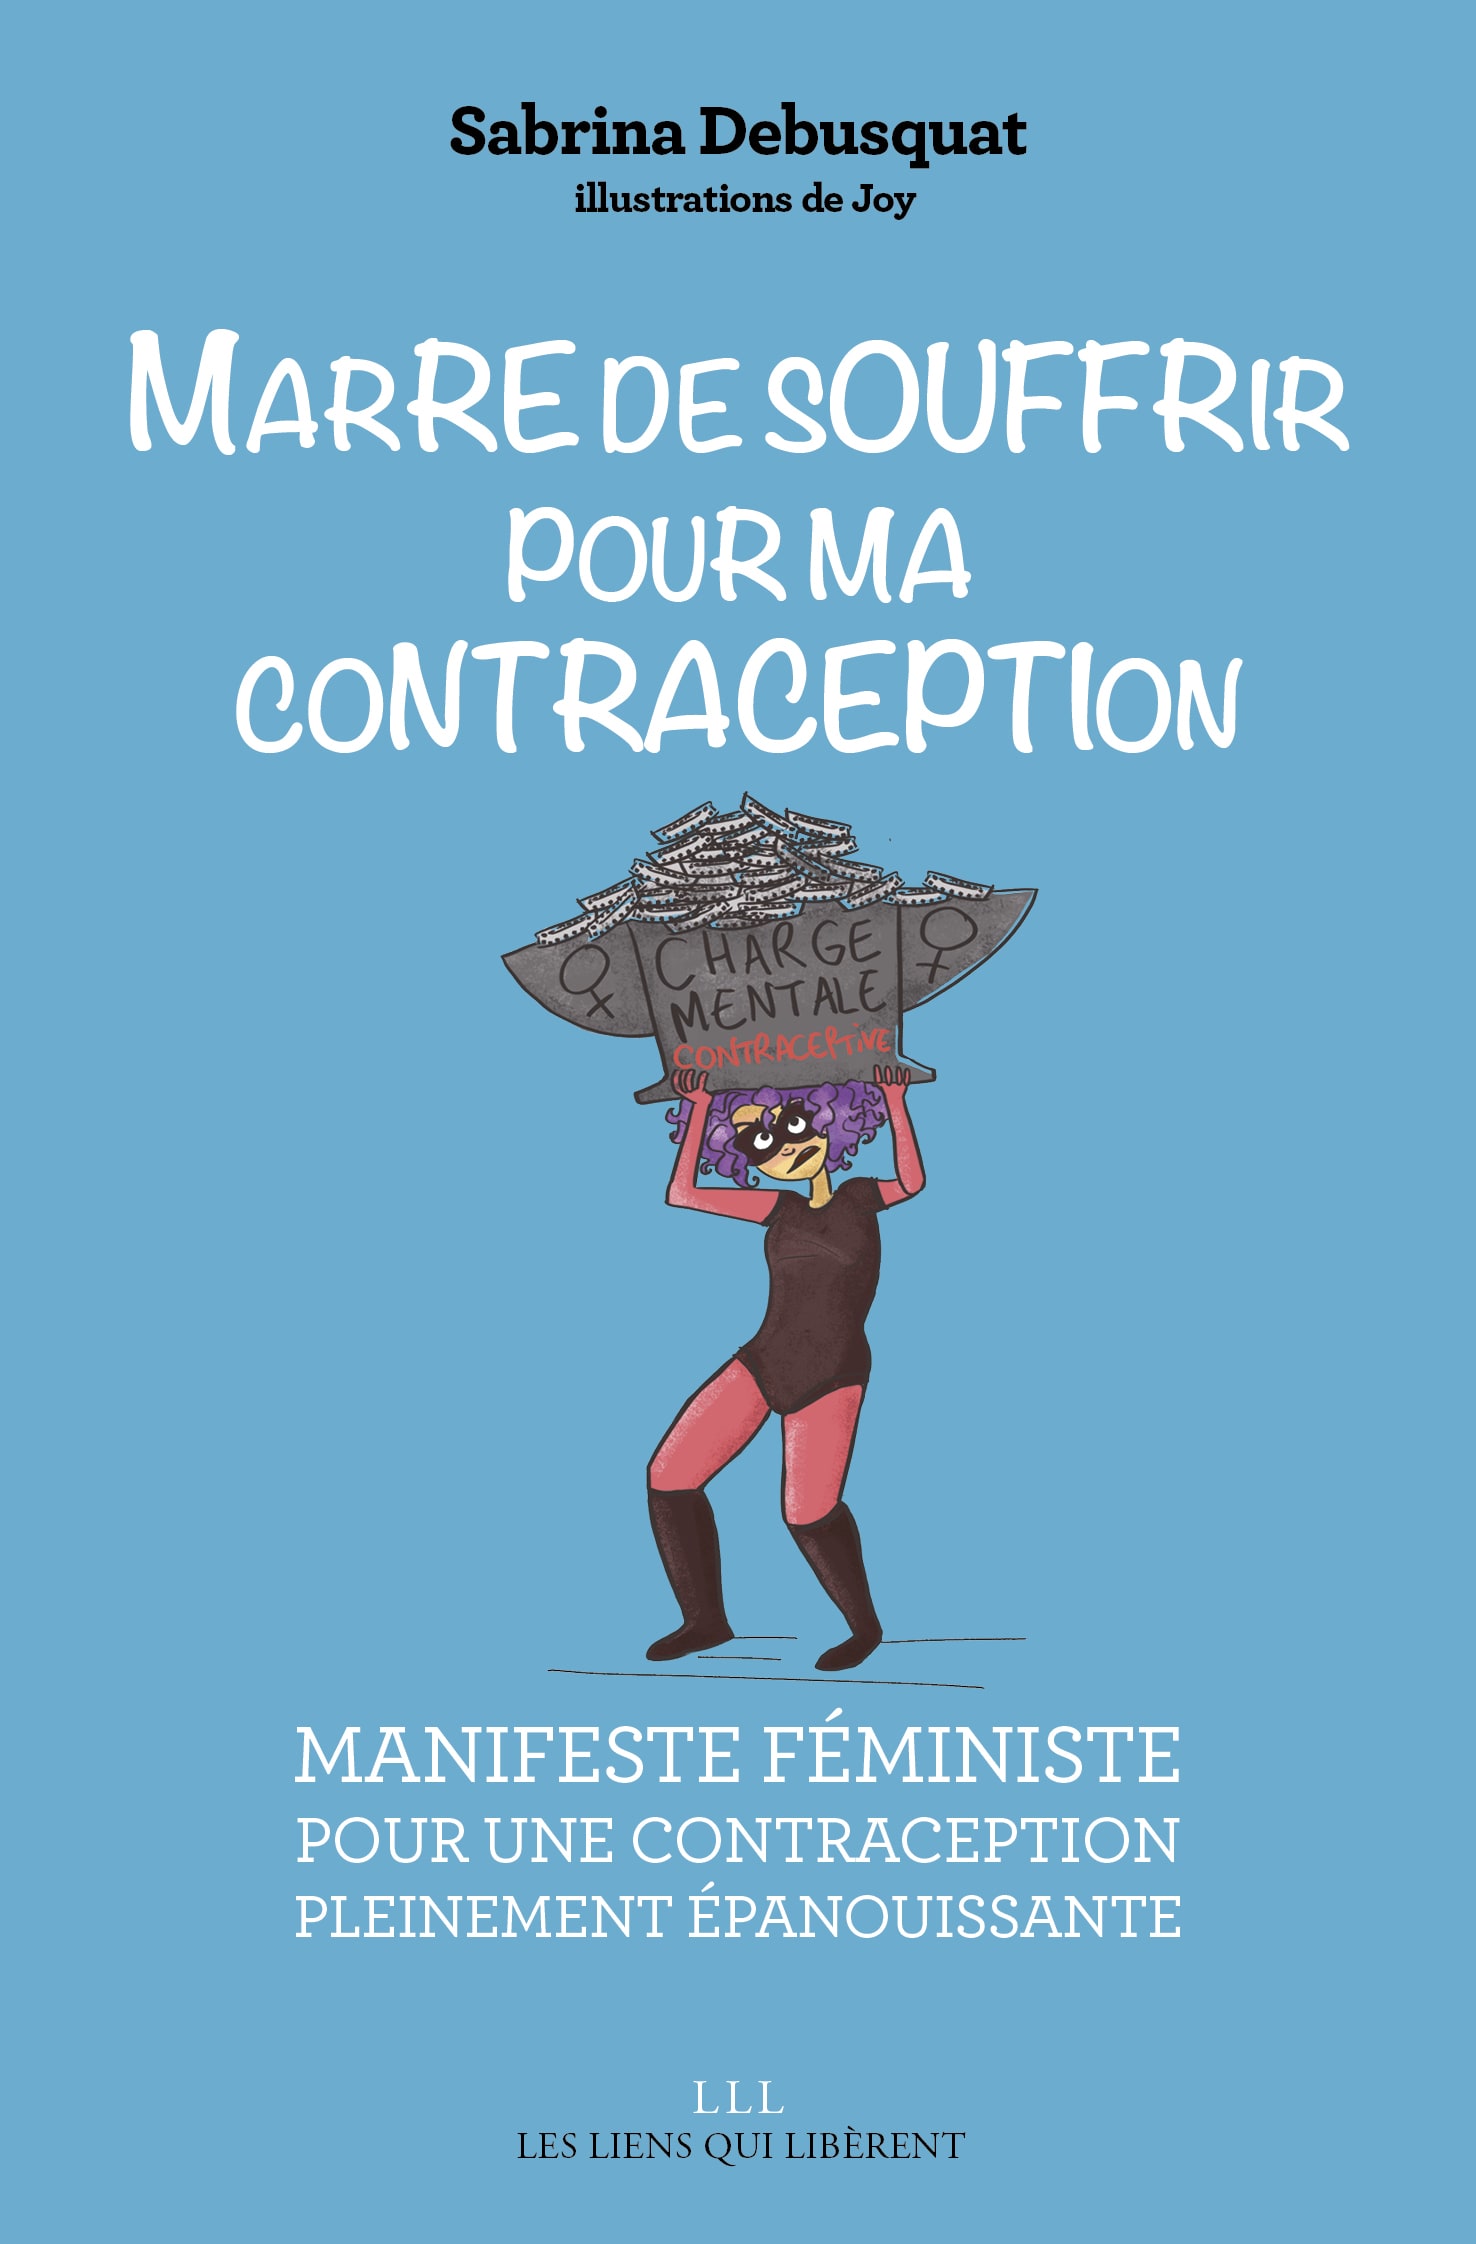 Couverture Marre de souffrir pour ma contraception - Sabrina Debusquat - Les Liens qui Libèrent - Avril 2019